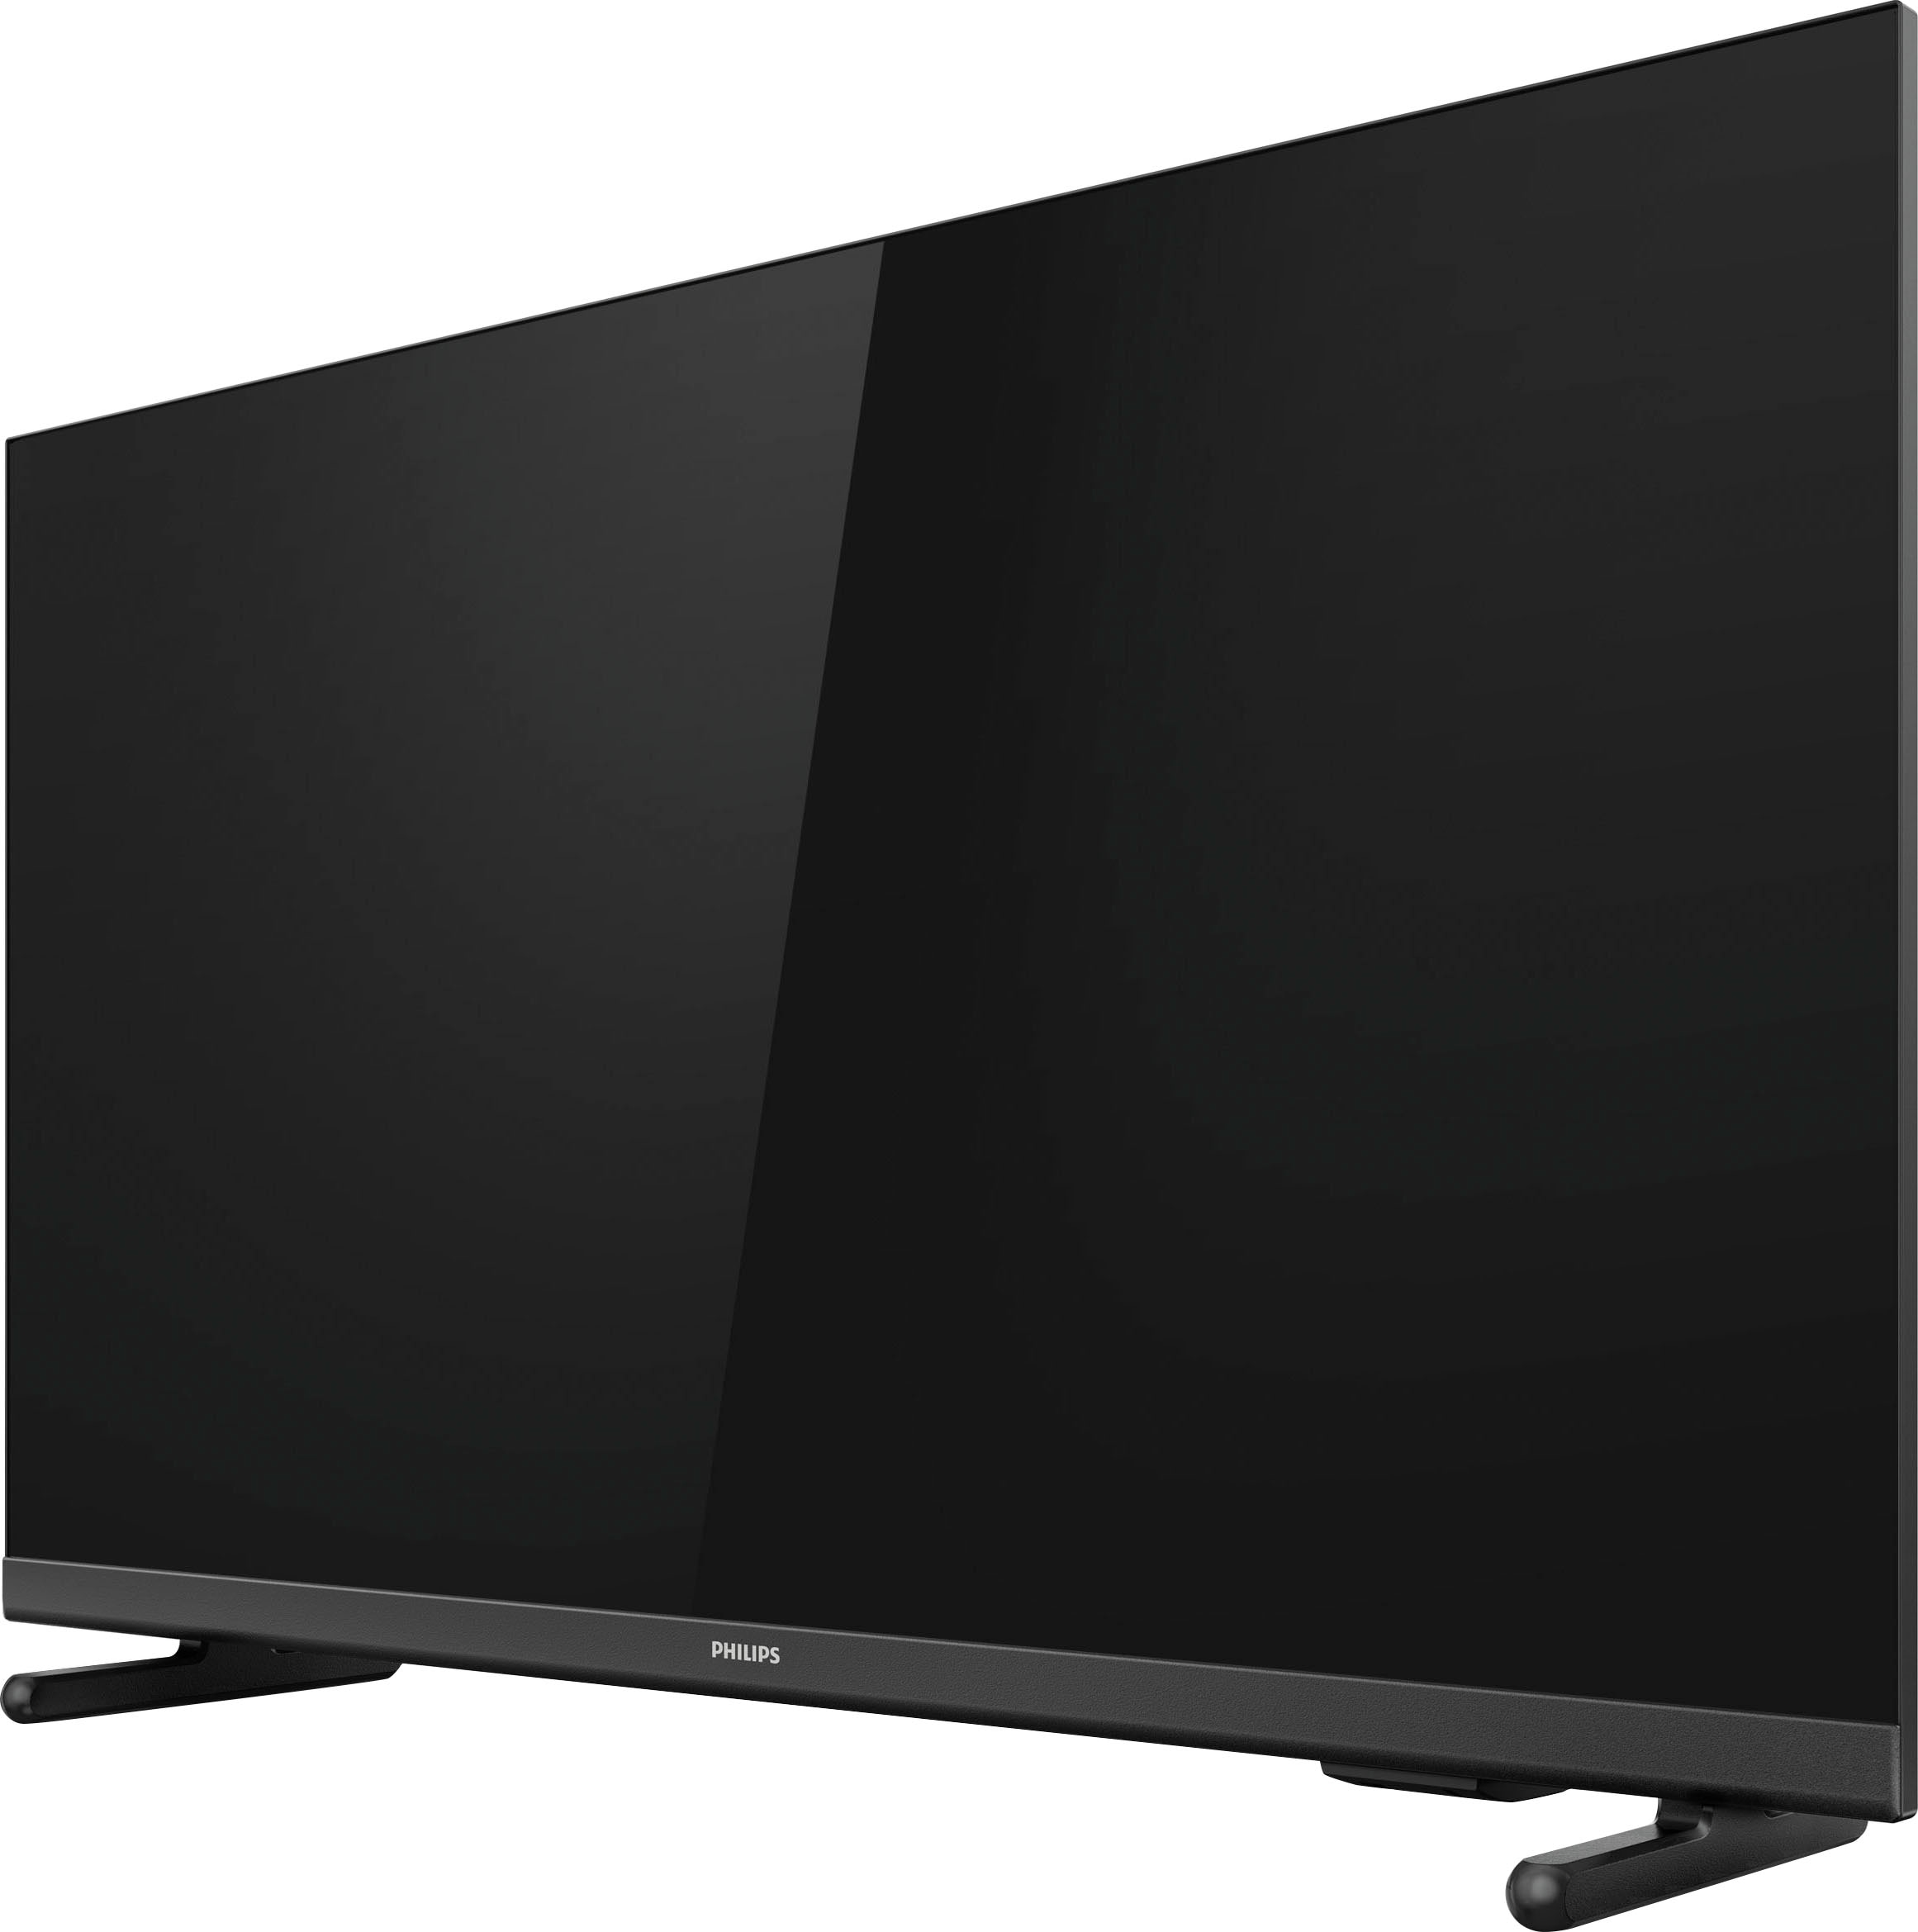 Philips LED-Fernseher »43PFS5507/12«, 108 cm/43 Zoll, Full HD | BAUR